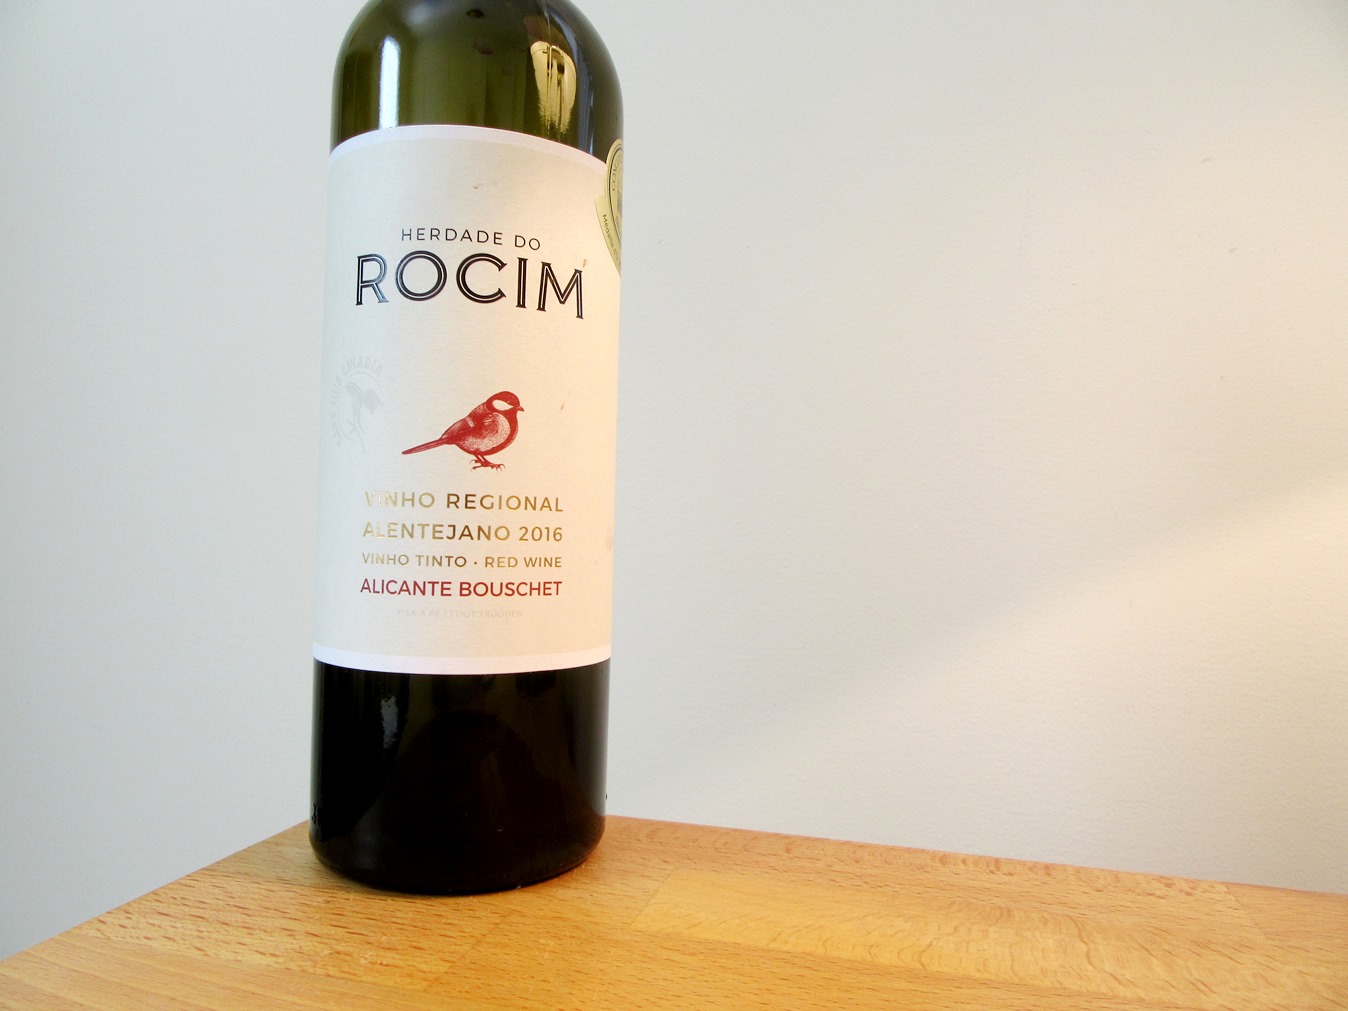 Herdade do Rocim, Alicante Bouschet 2016, Vinho Regional Alentejano, Portugal, Wine Casual